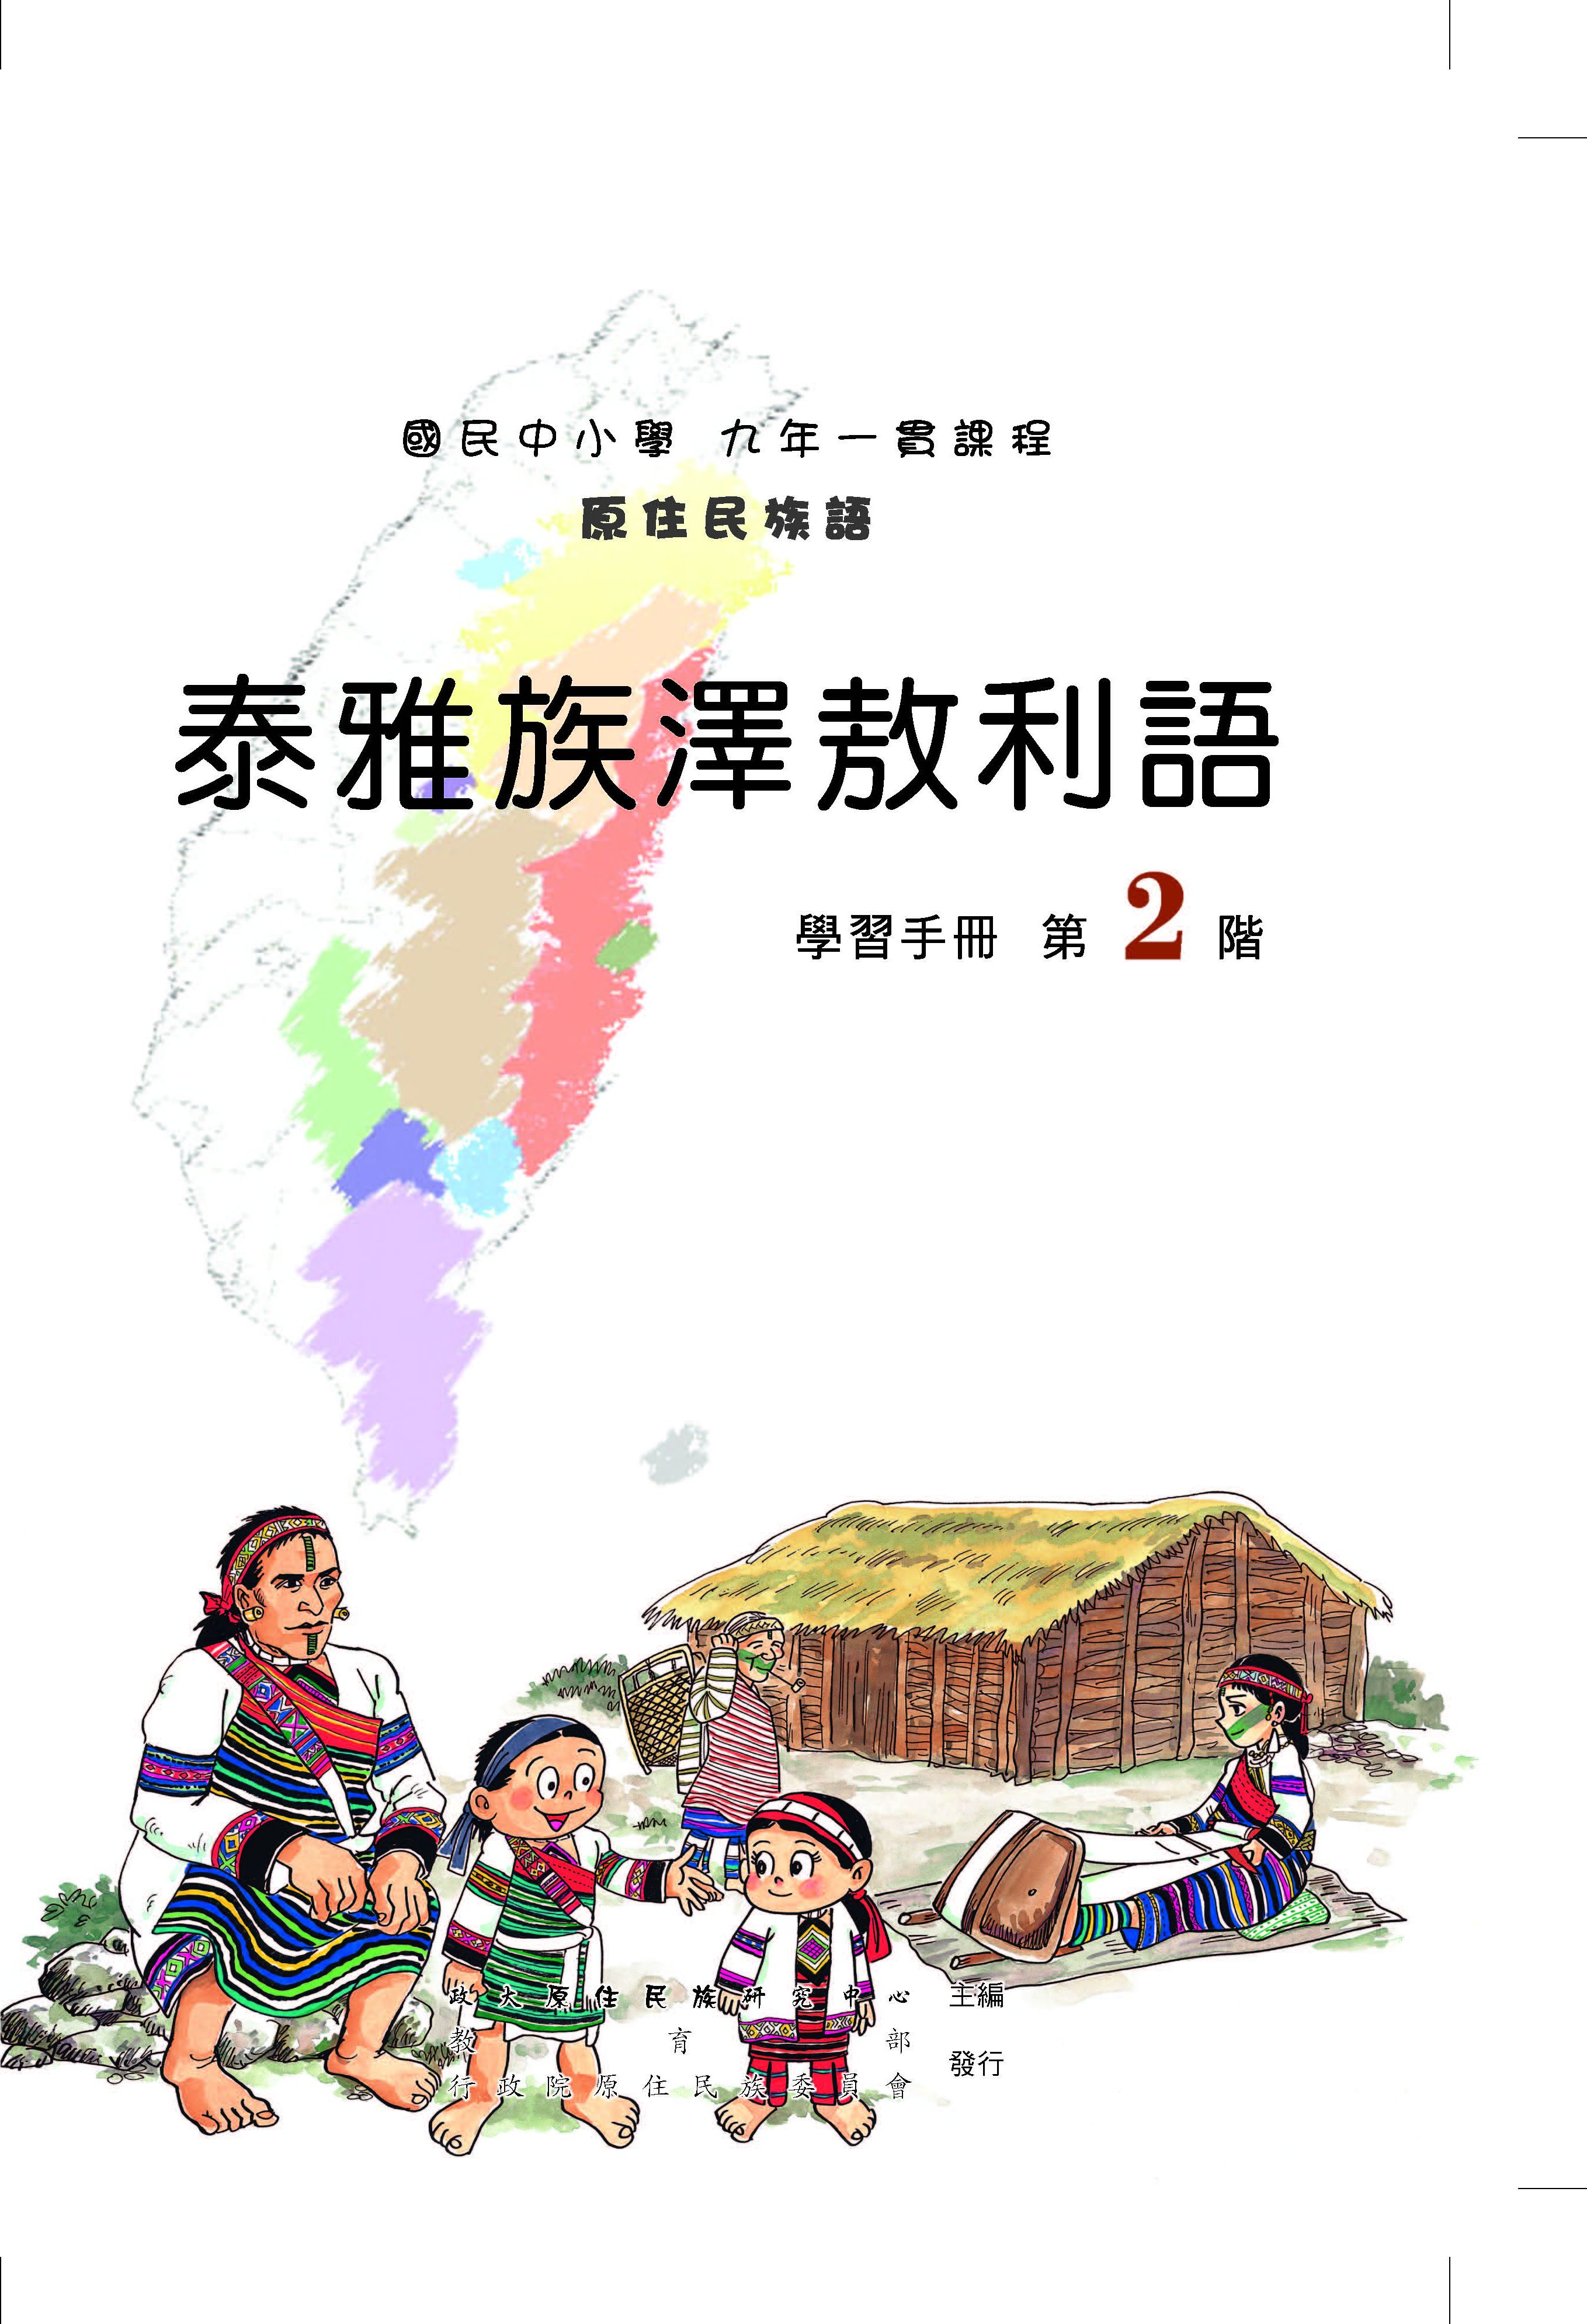 澤敖利泰雅語第2階學習手冊